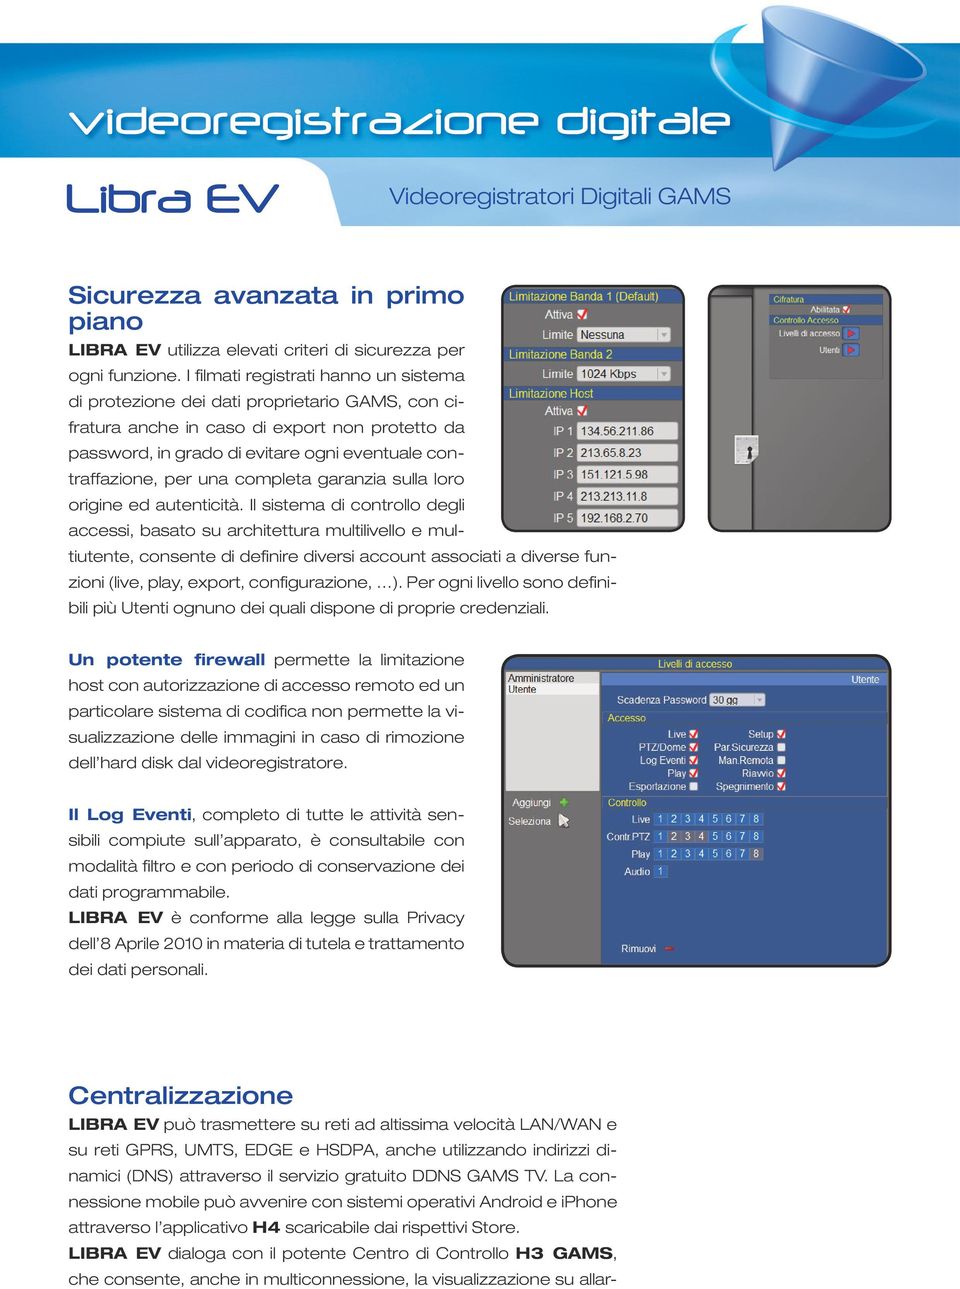 LIBRA EV dialoga con il potente Centro di Controllo H3 GAMS, che consente, anche in multiconnessione, la visualizzazione su allarvideoregistrazione digitale Sicurezza avanzata in primo piano LIBRA EV